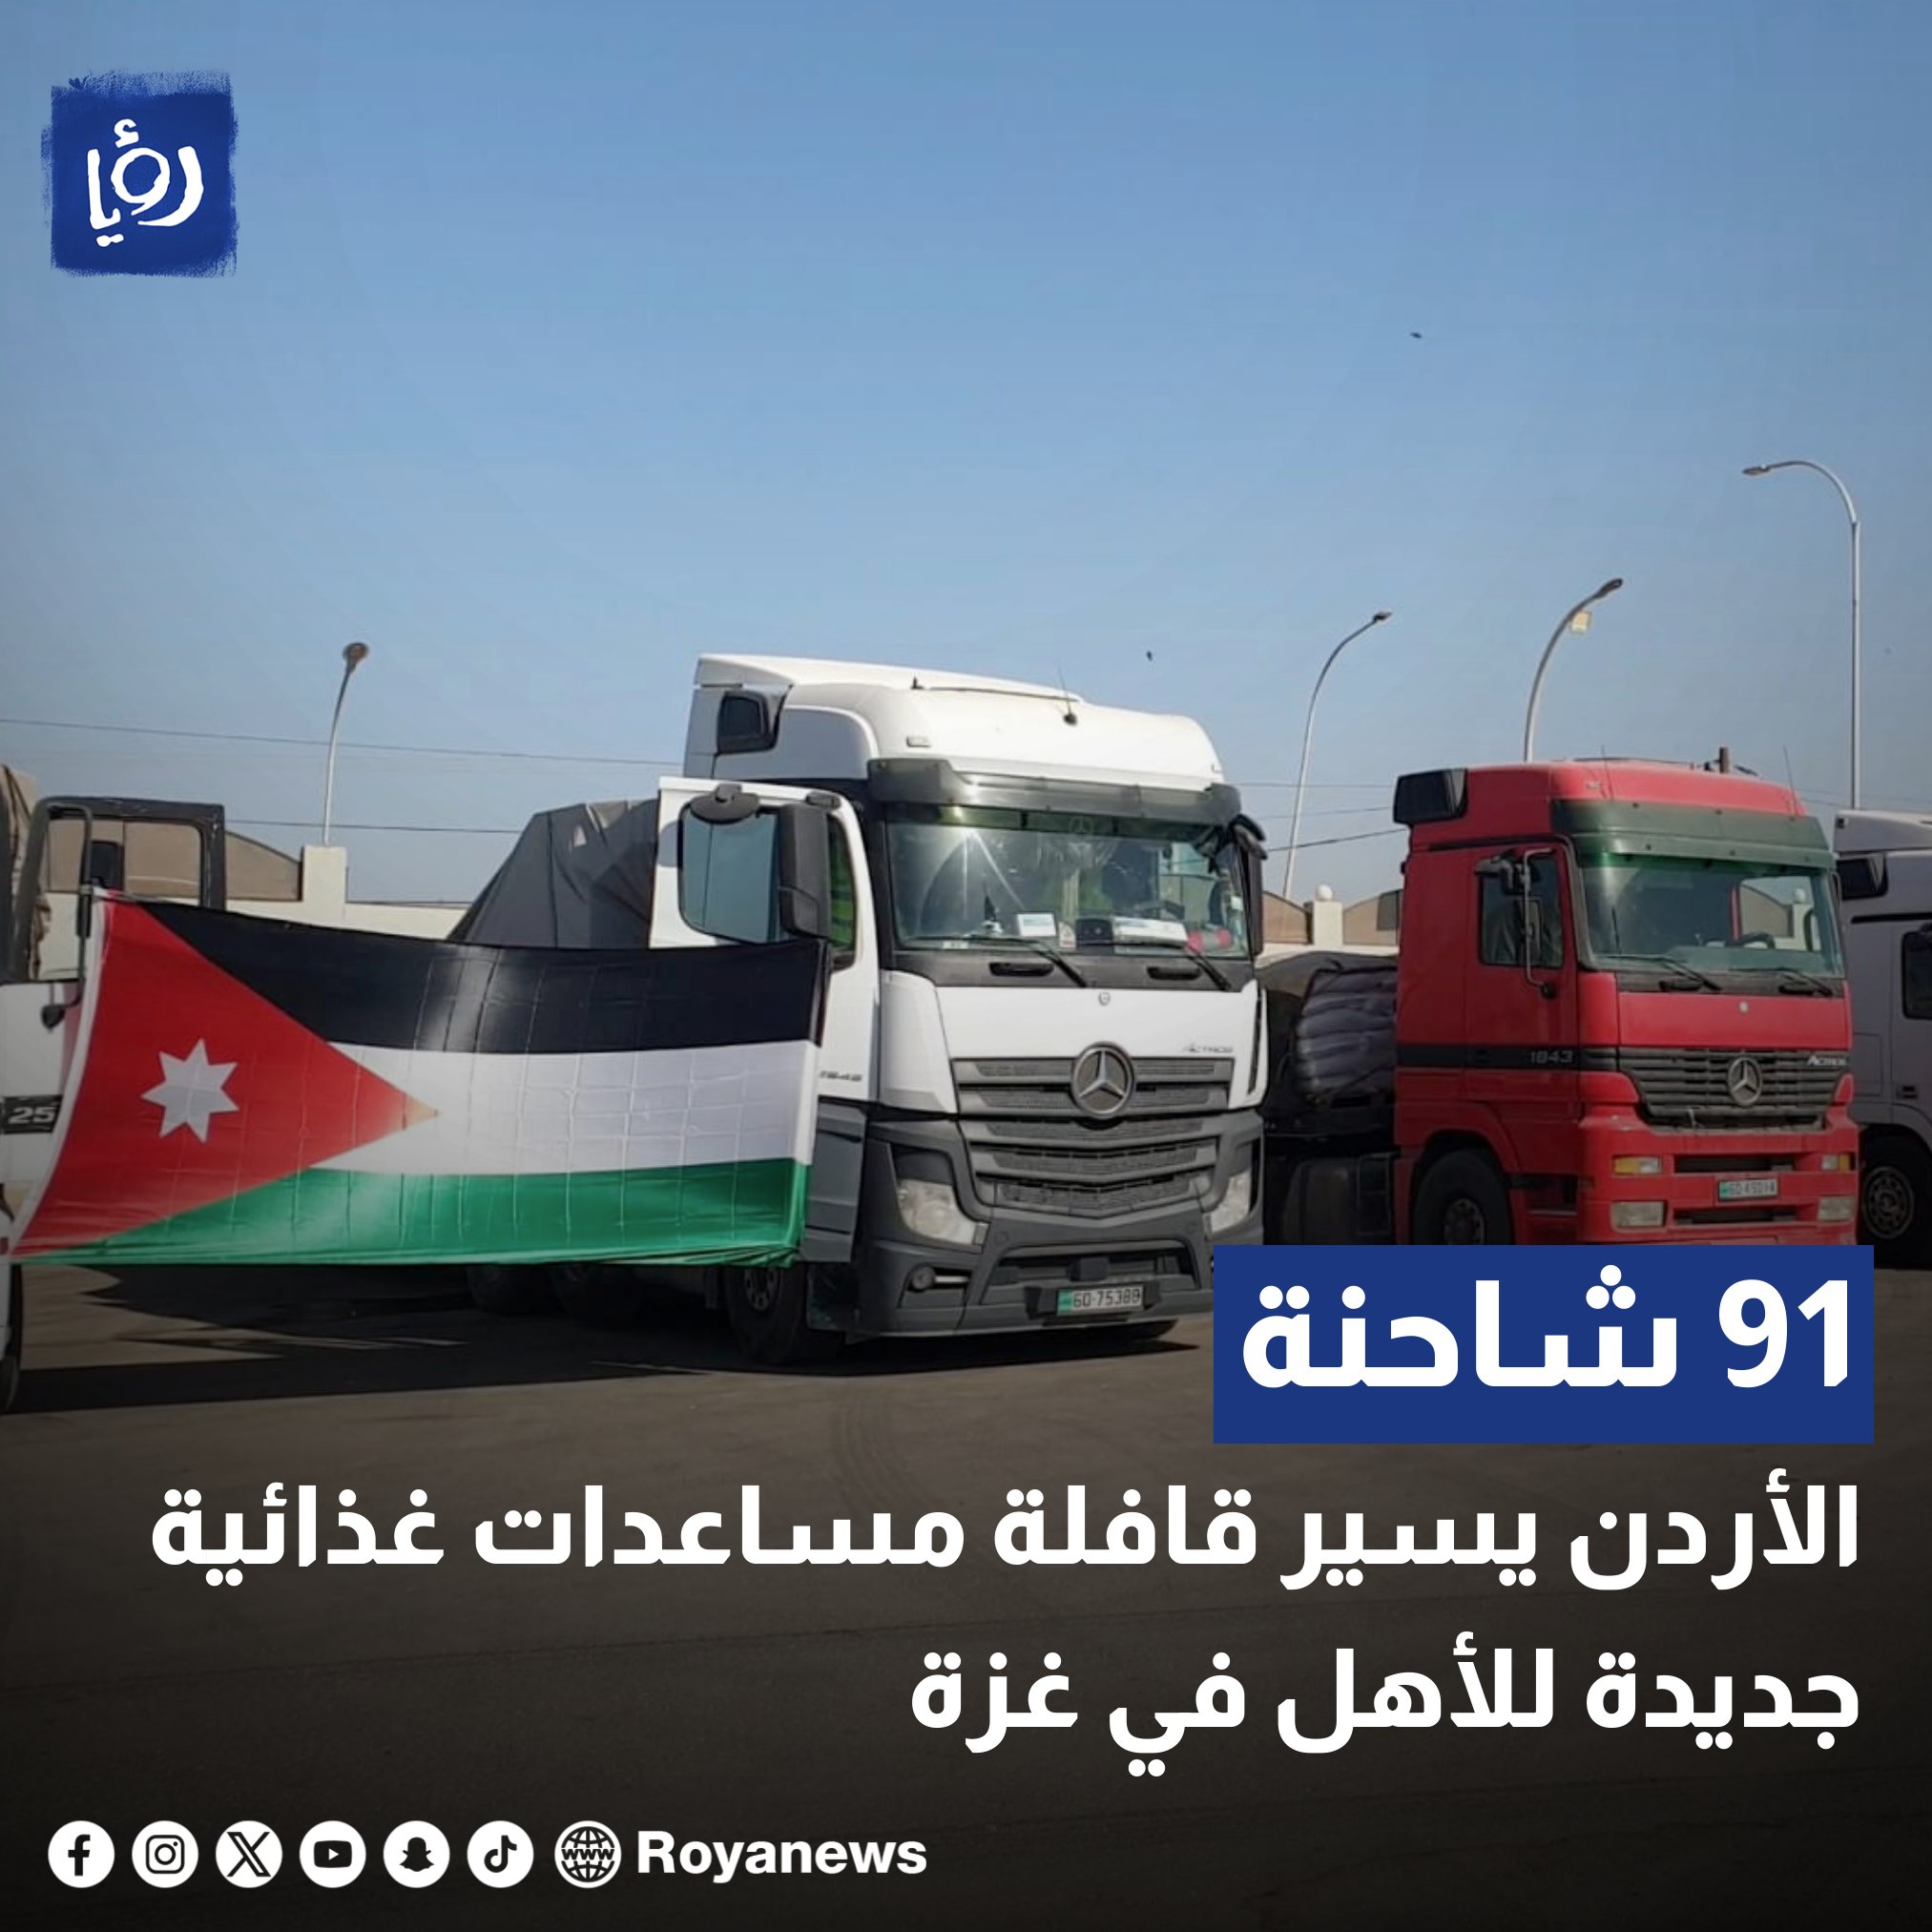 الأردن يسير قافلة مساعدات غذائية جديدة للأهل في غزة مكونة من 91 شاحنة #رؤيا_الإخباري 